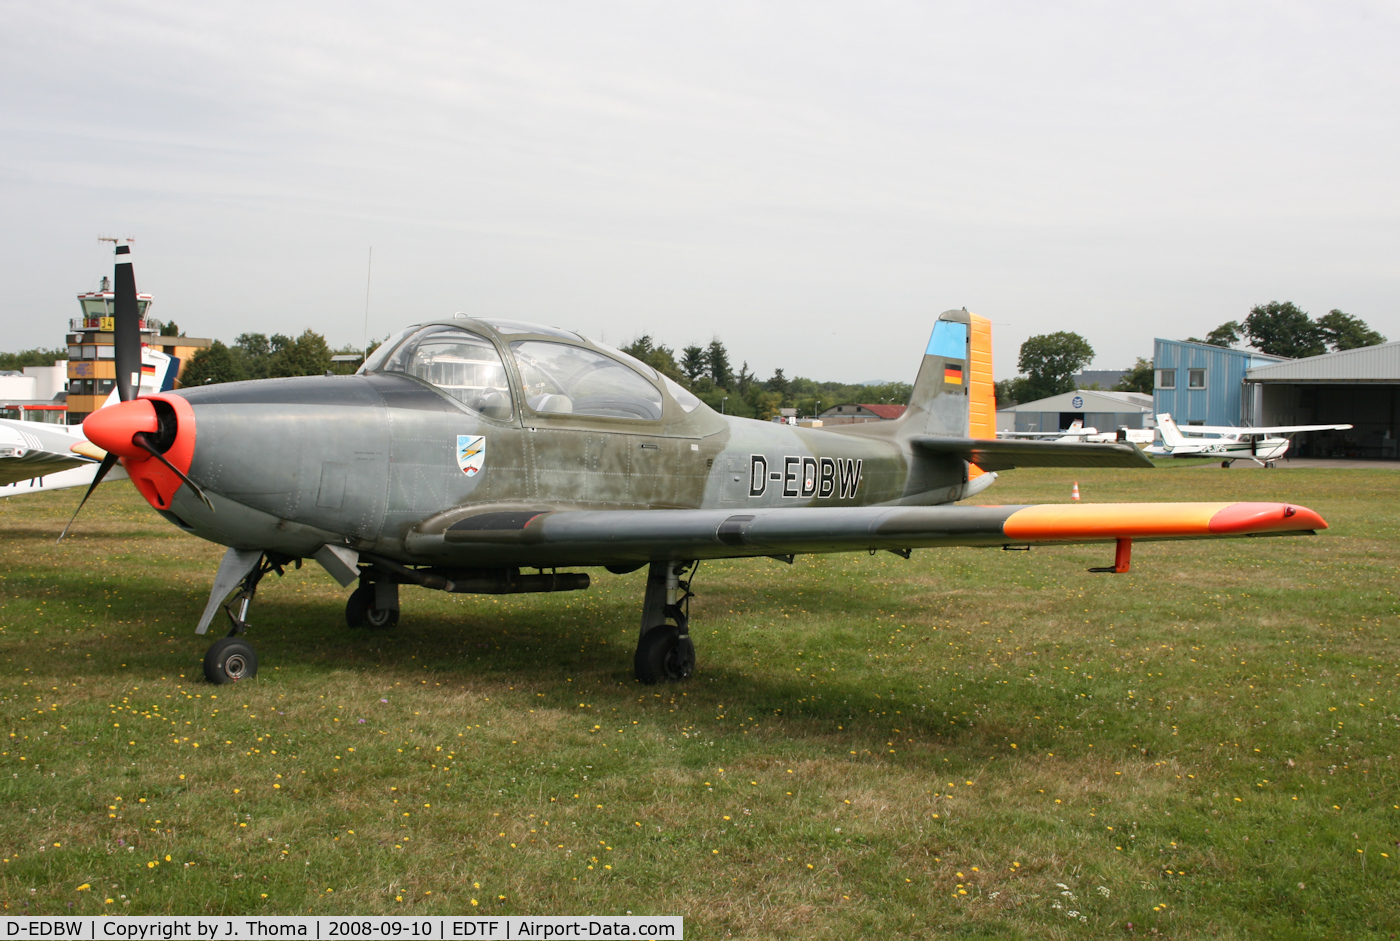 D-EDBW, Focke-Wulf FWP-149D C/N 107, Focke-Wulf / Piaggio PWD-149D